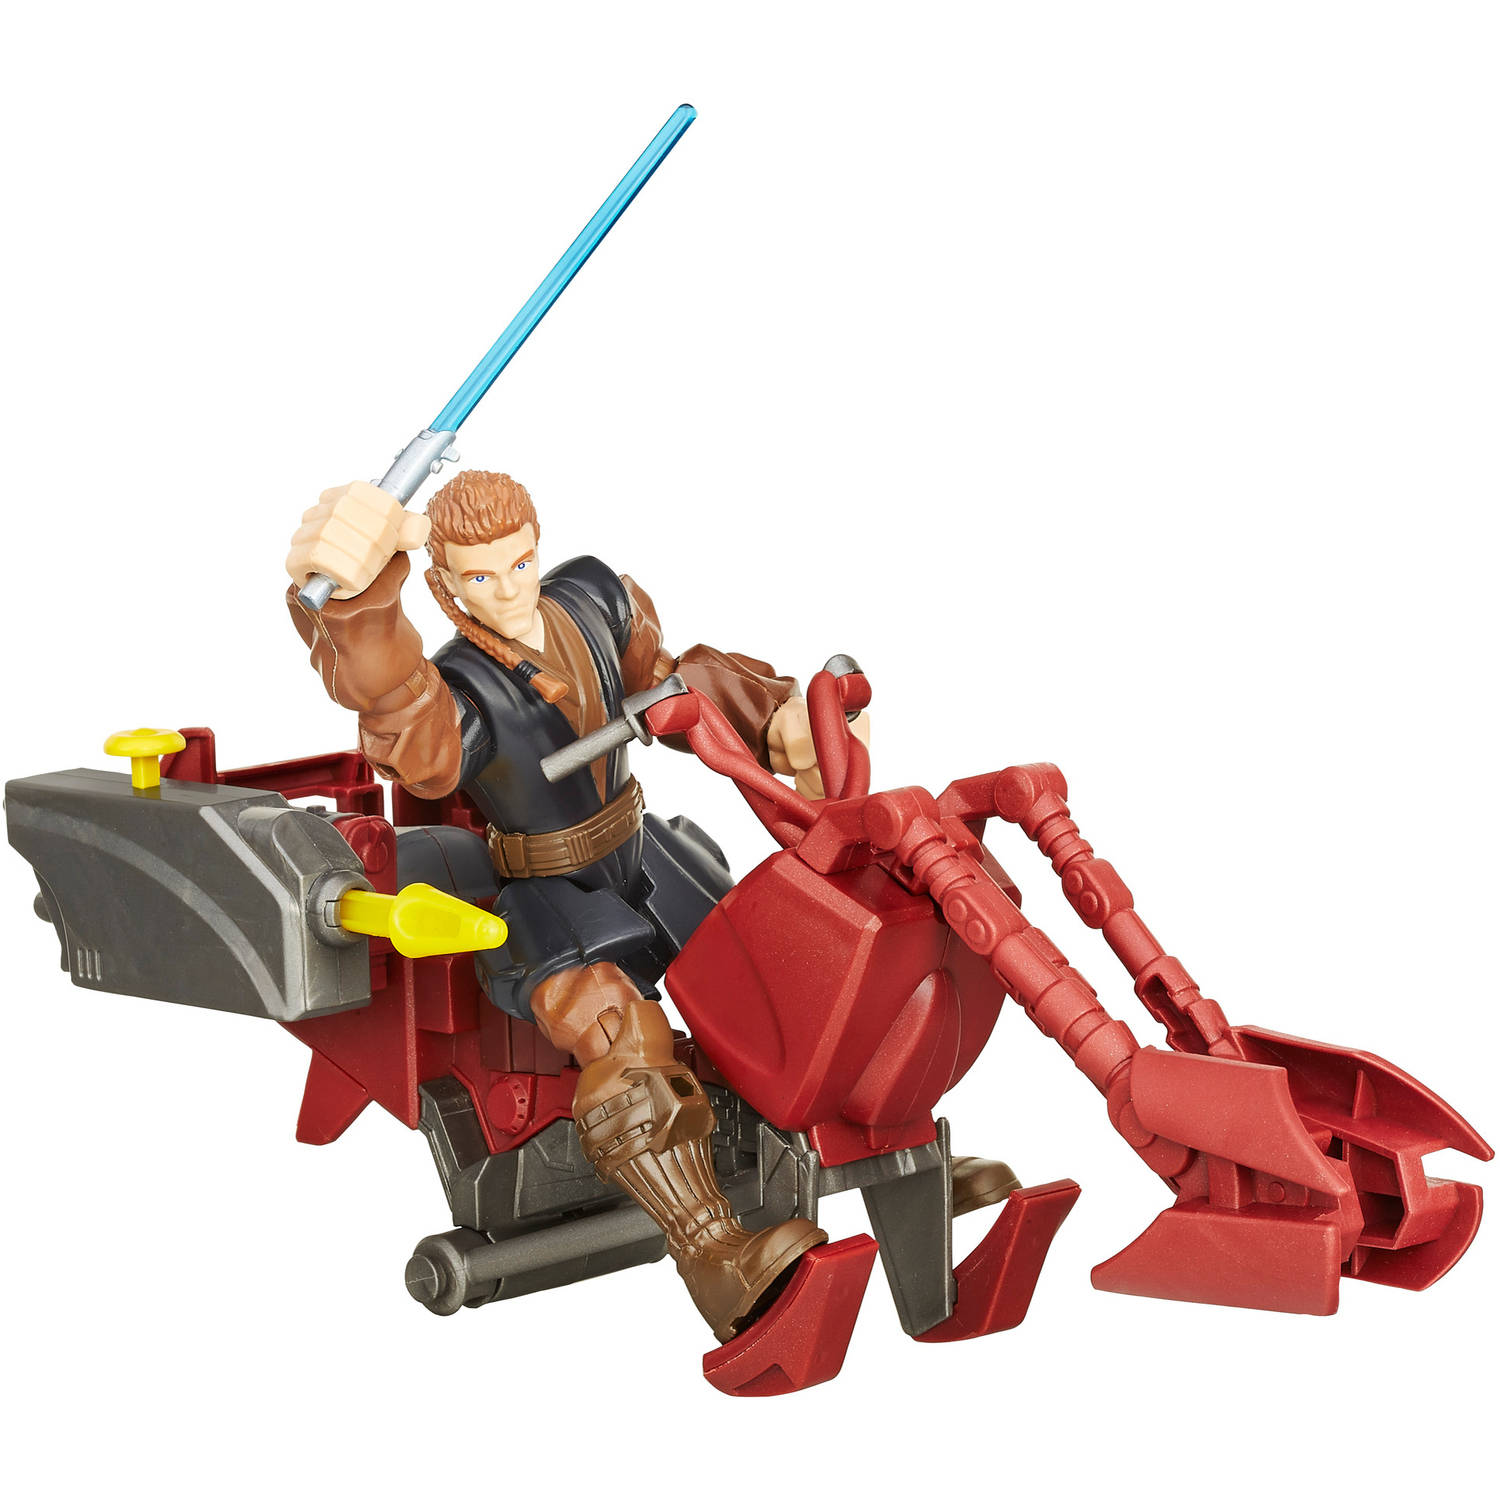 Star Wars Hero Mashers Jedi Speeder and Anakin Skywalker - image 1 of 10